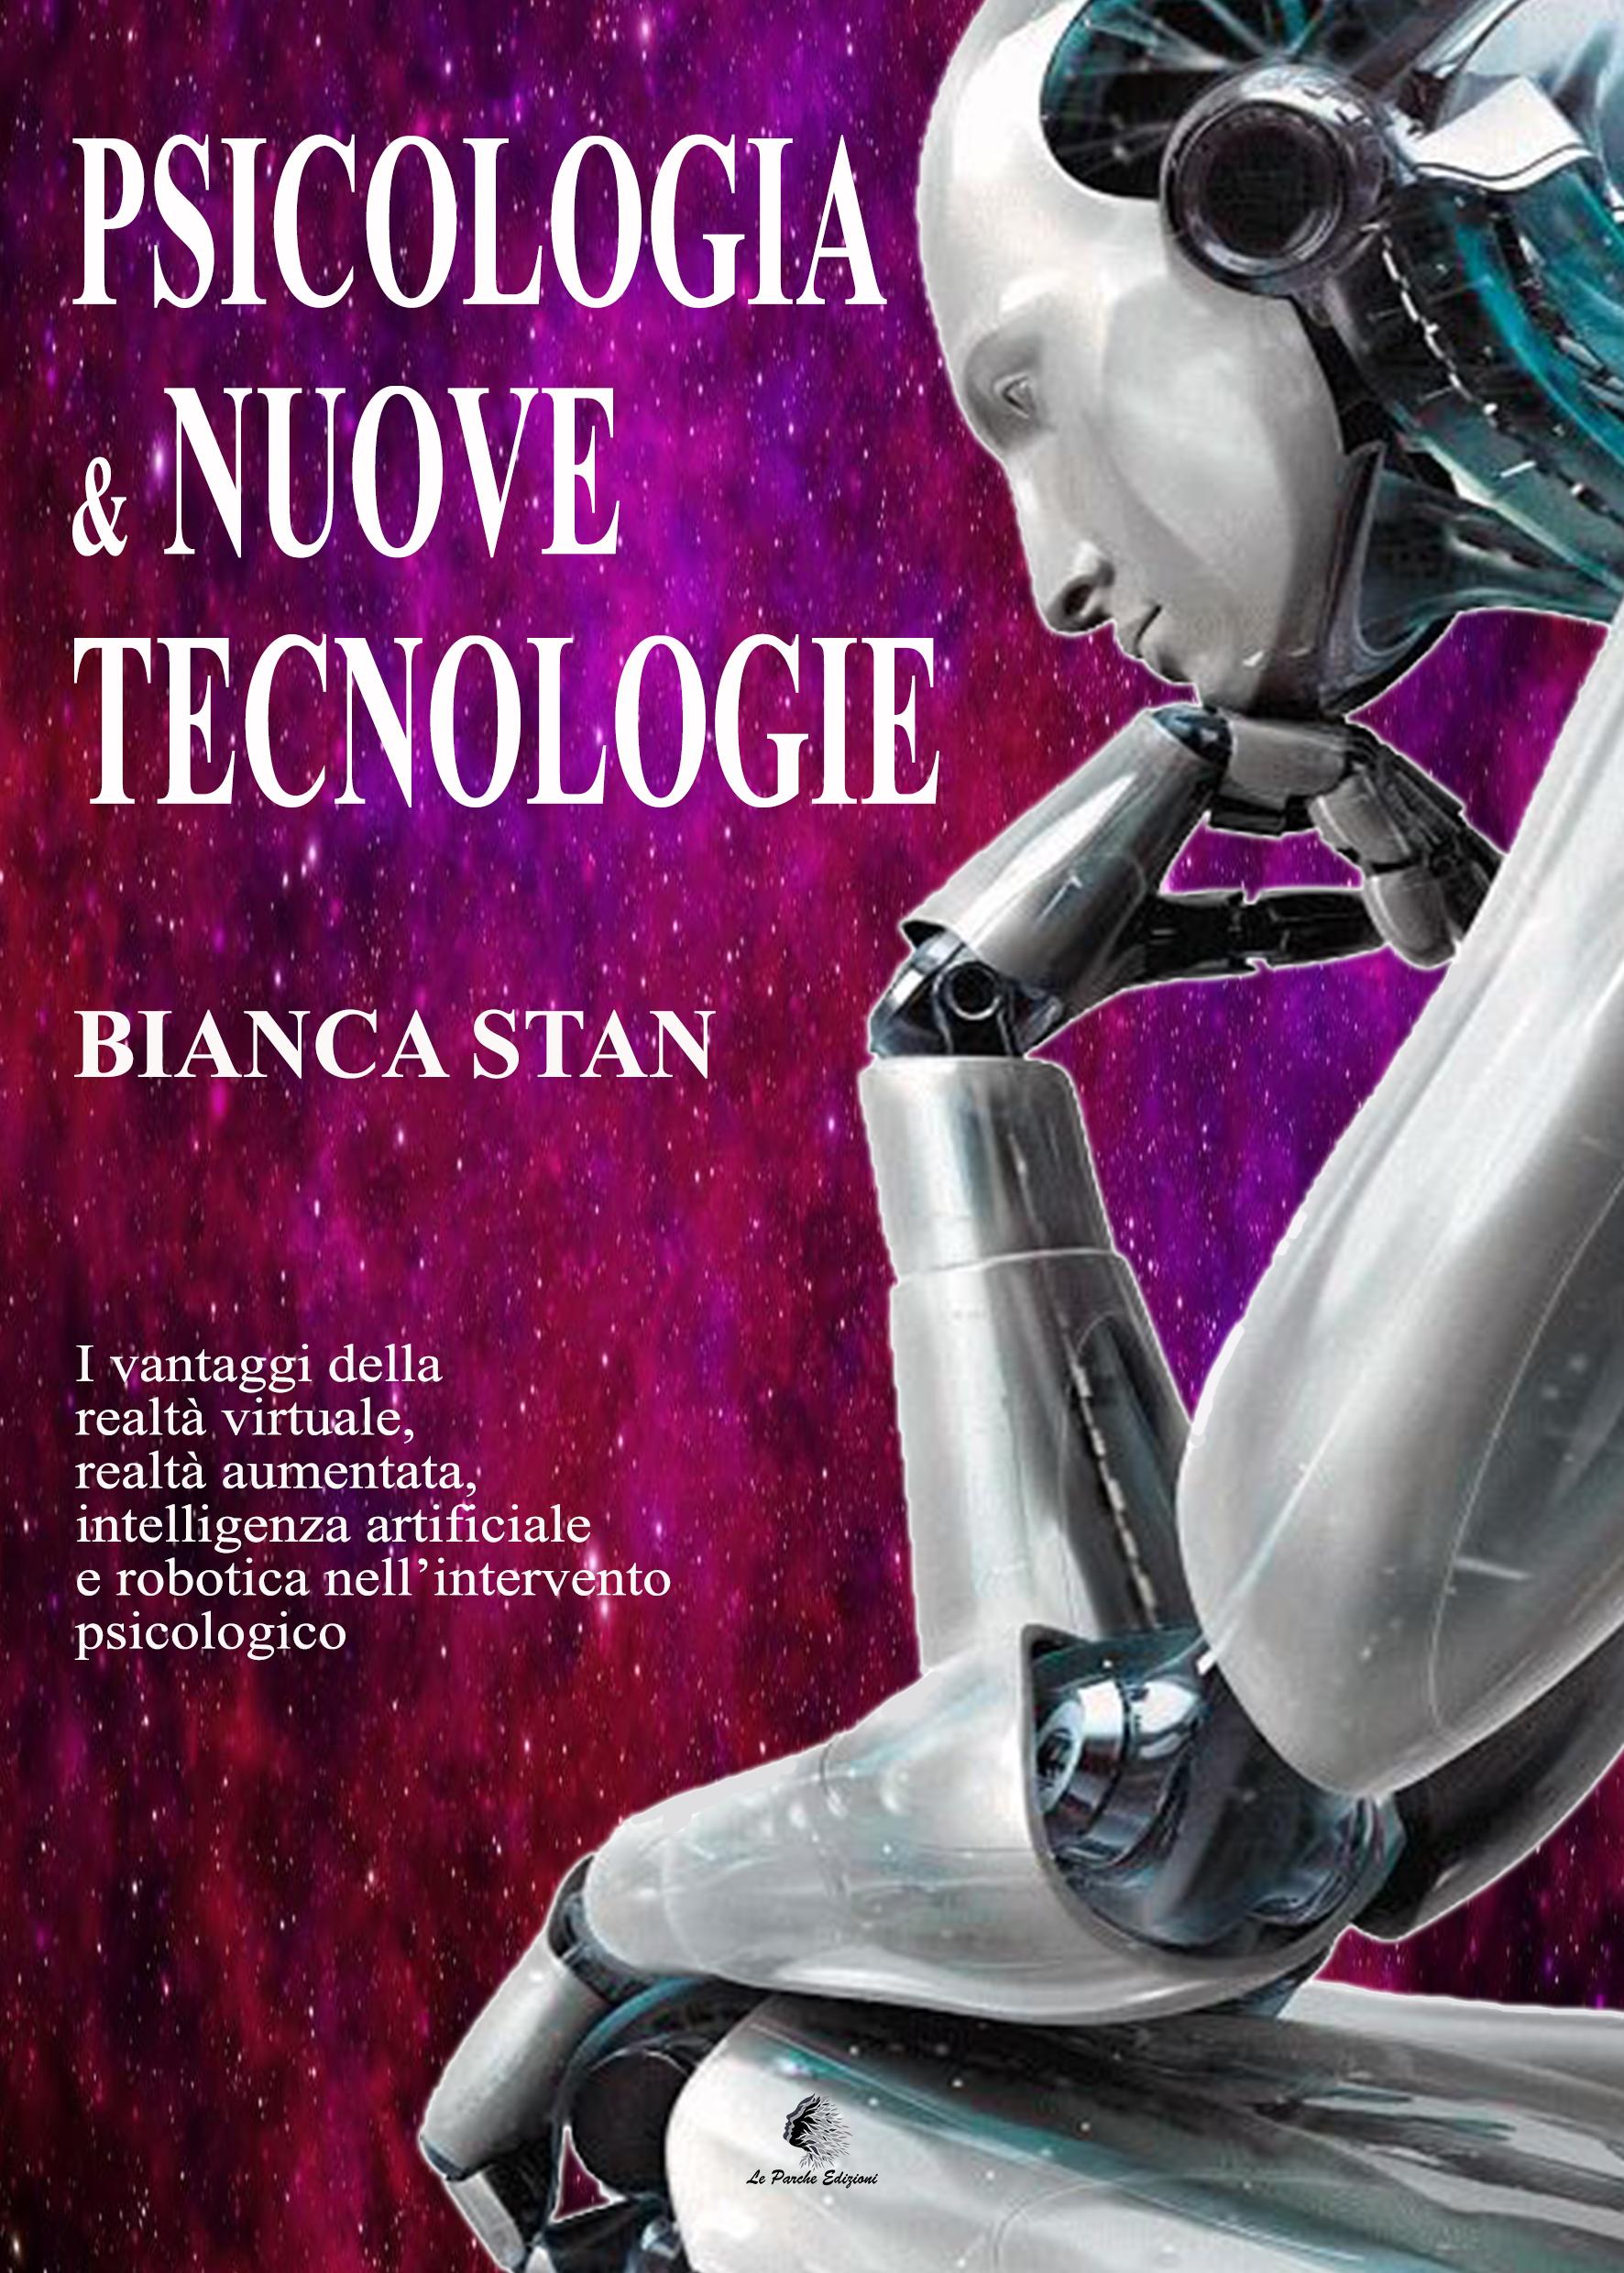 "Psicologia e nuove tecnologie" di Bianca Stan